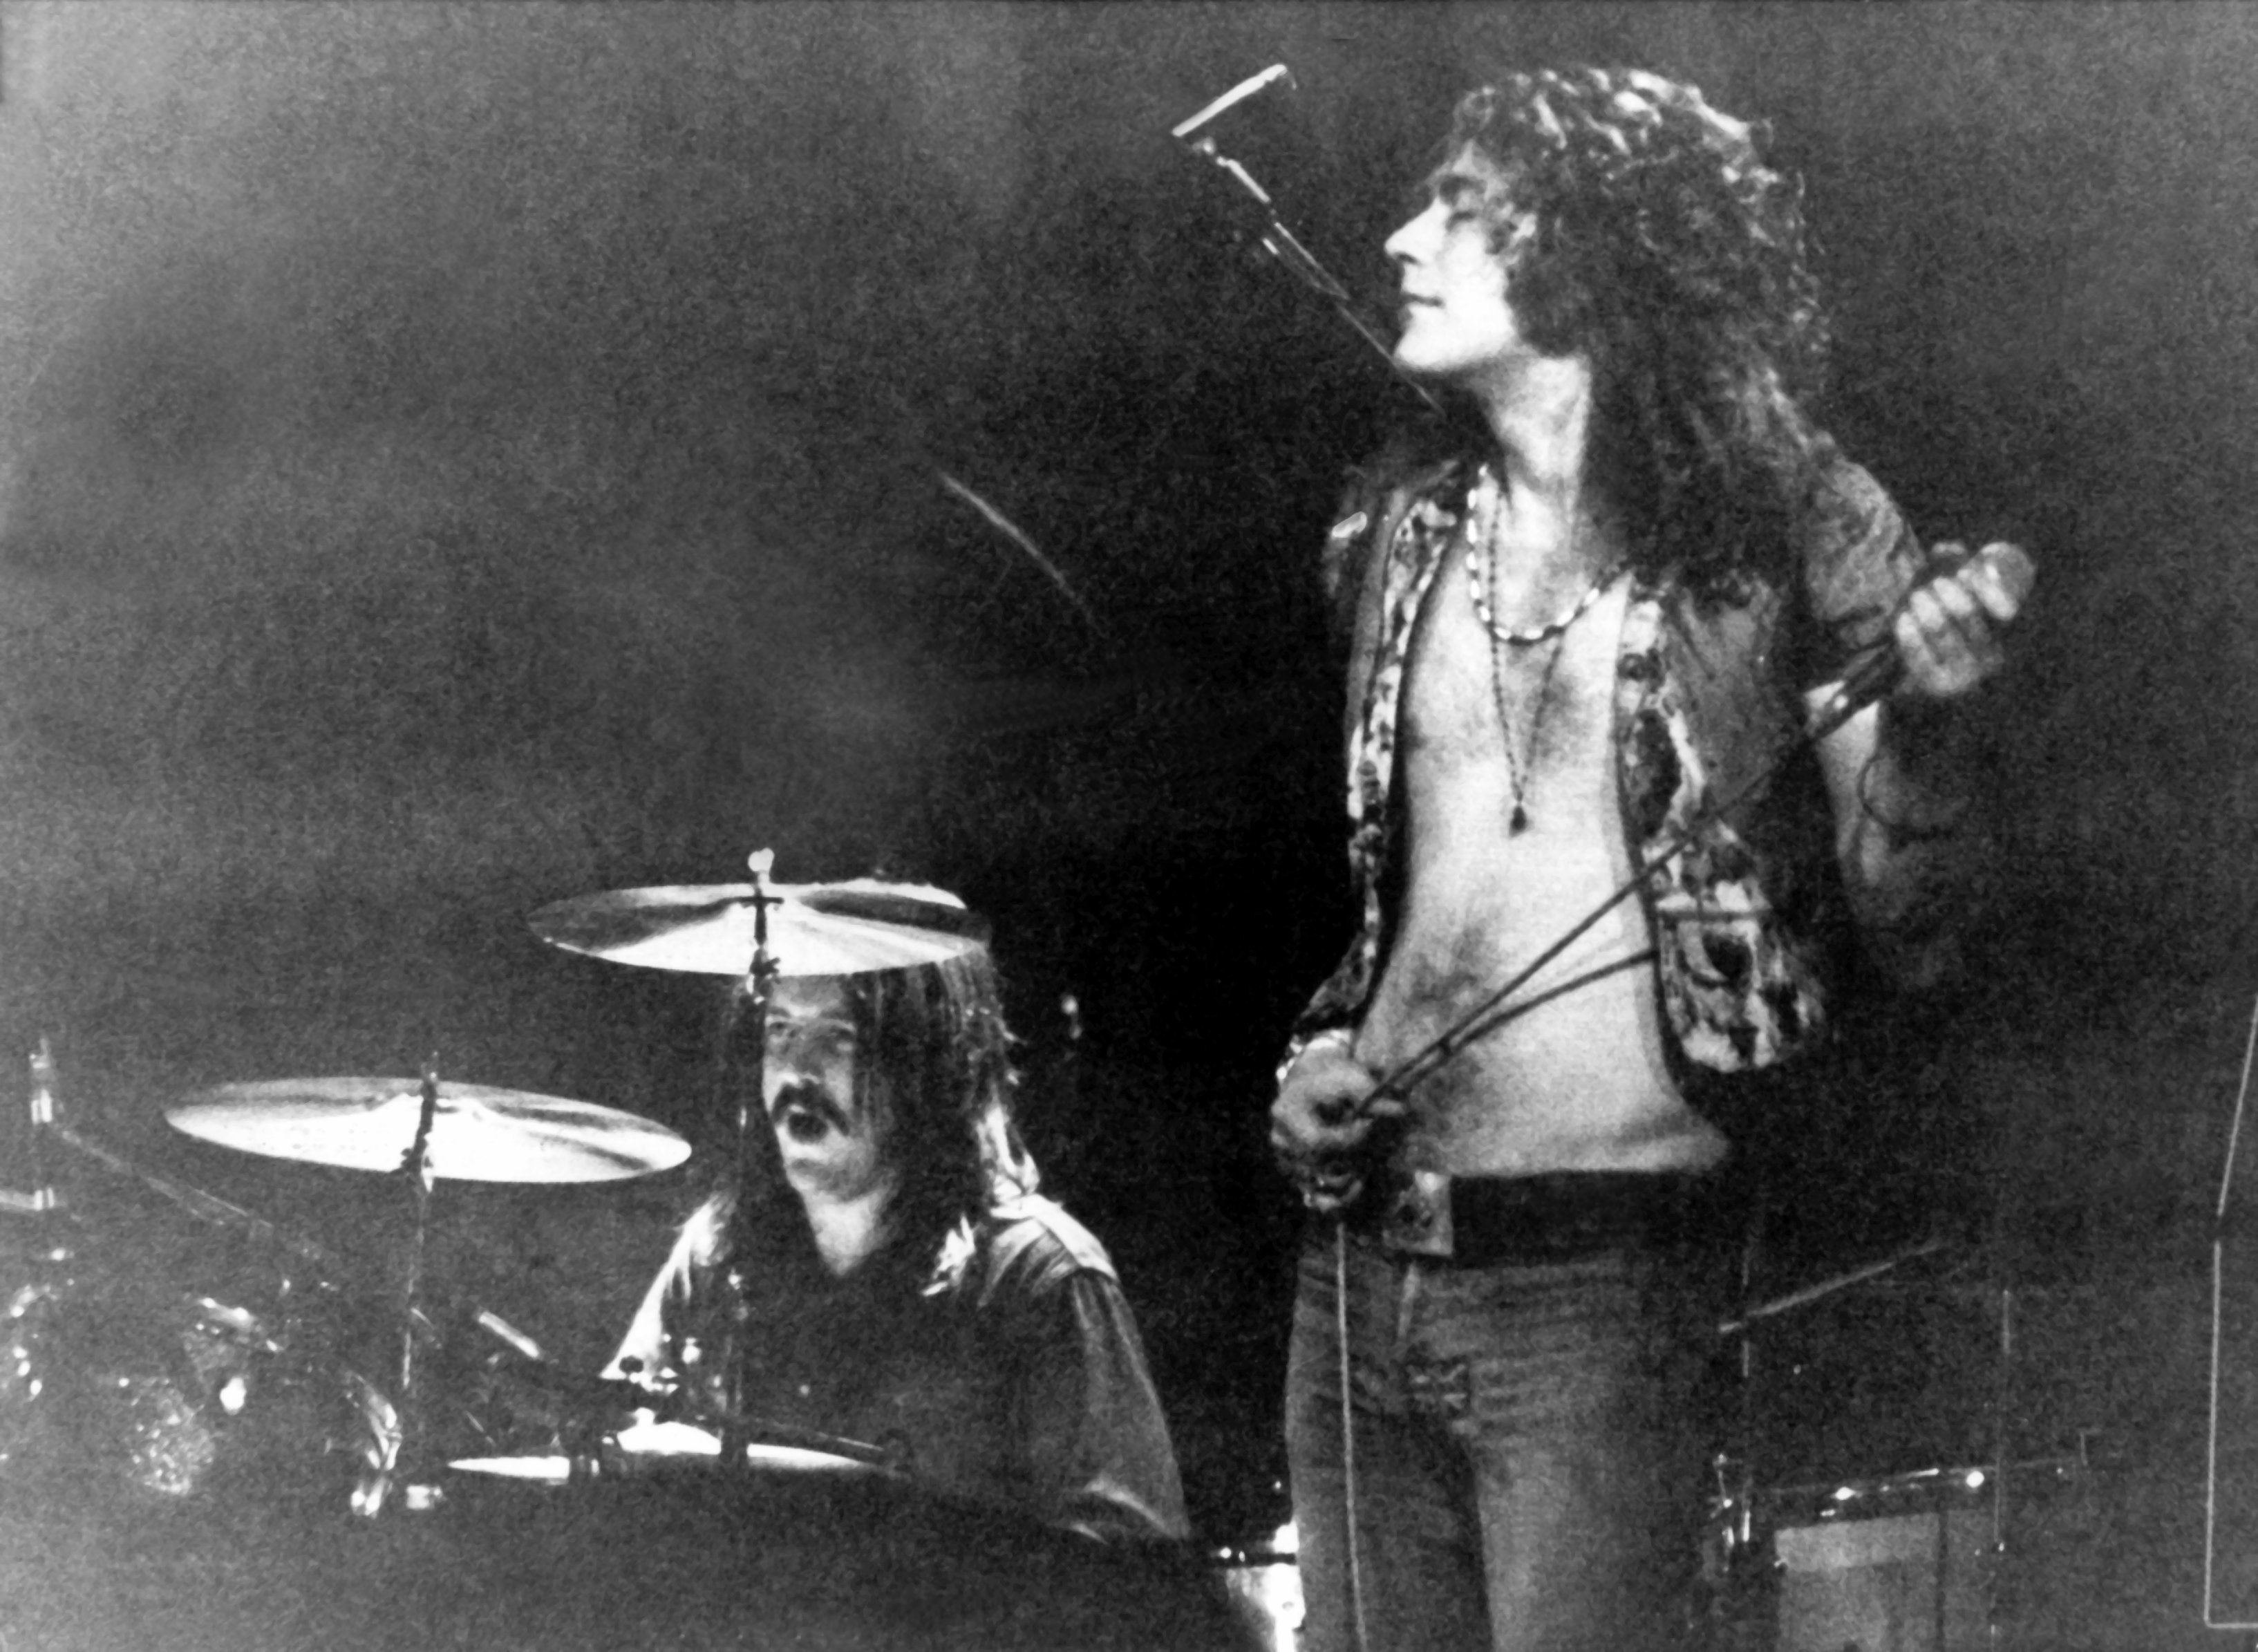 Filho quer holograma de John Bonham, baterista do Led Zeppelin morto em  1980 - 18/07/2013 - UOL Entretenimento